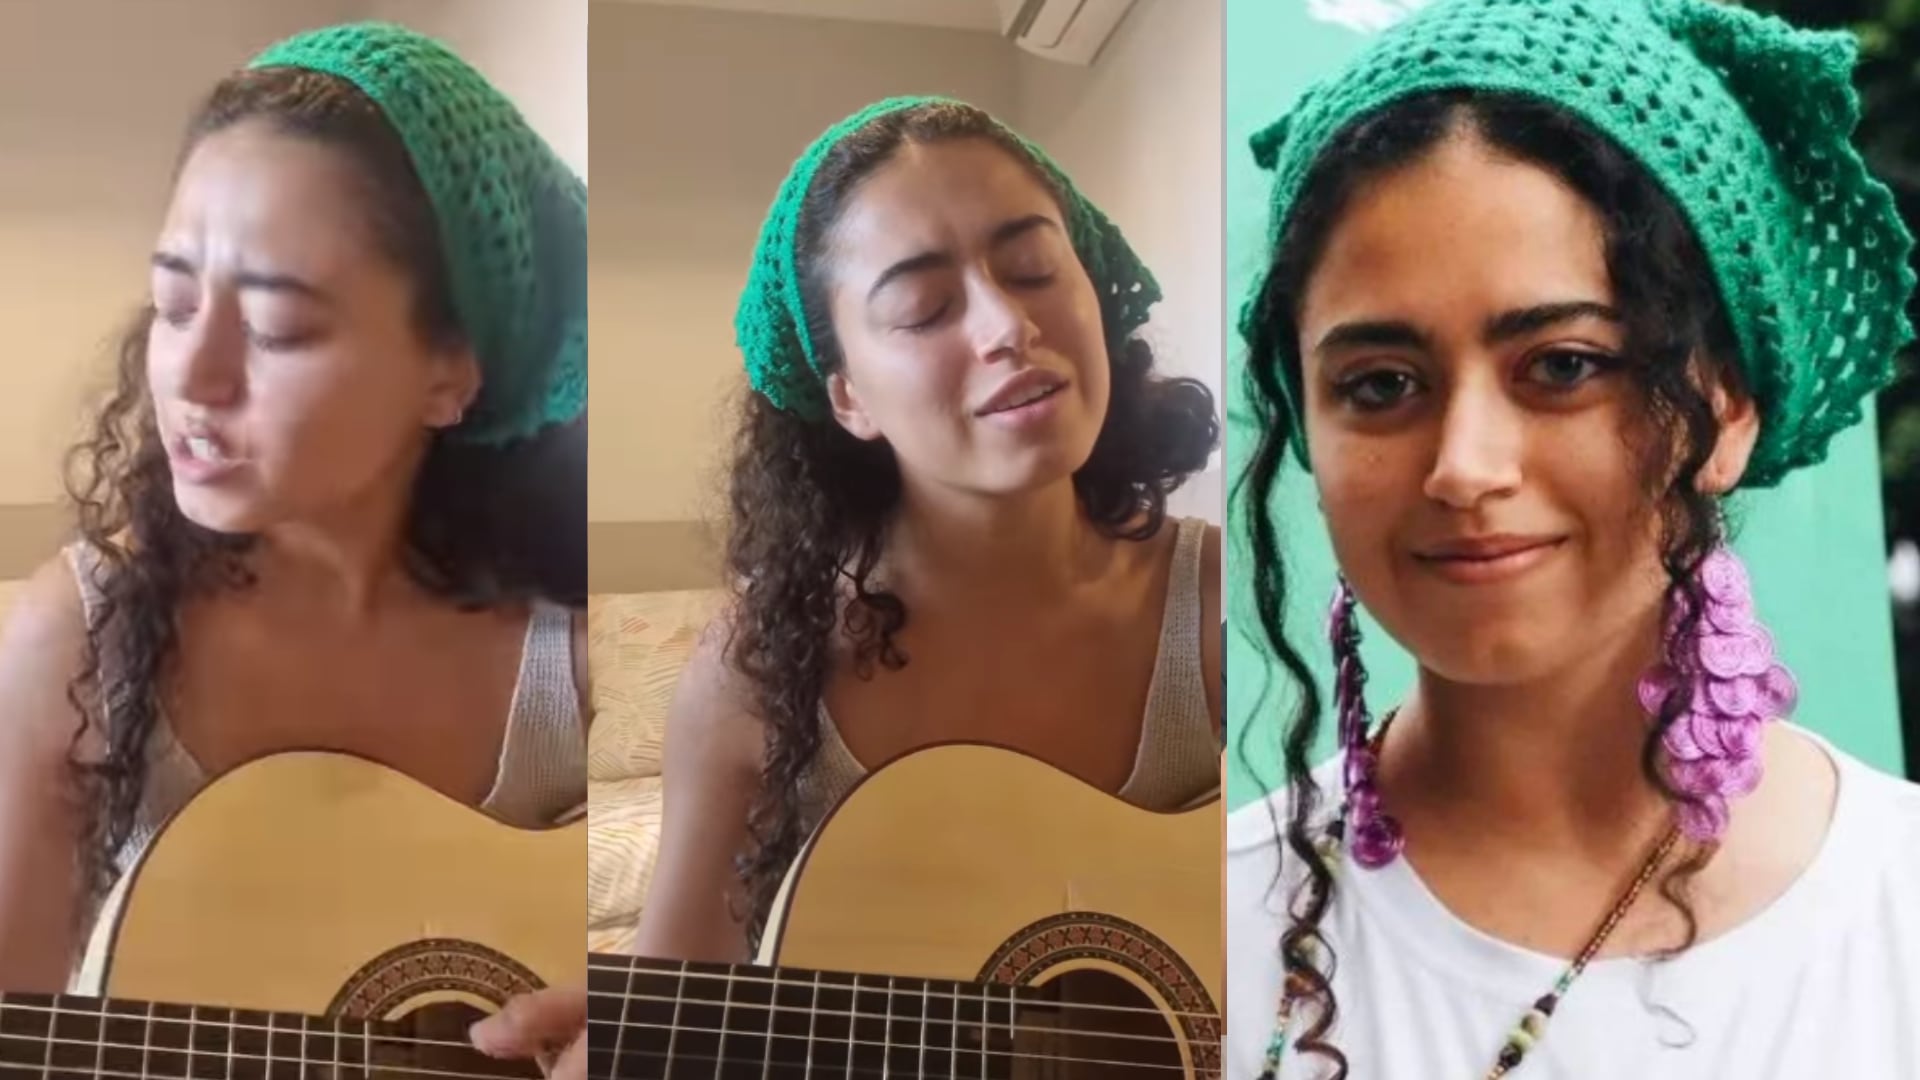 Sofía Petro, hija de Gustavo Petro, mostró su talento como cantante en celebración del Día de la mujer